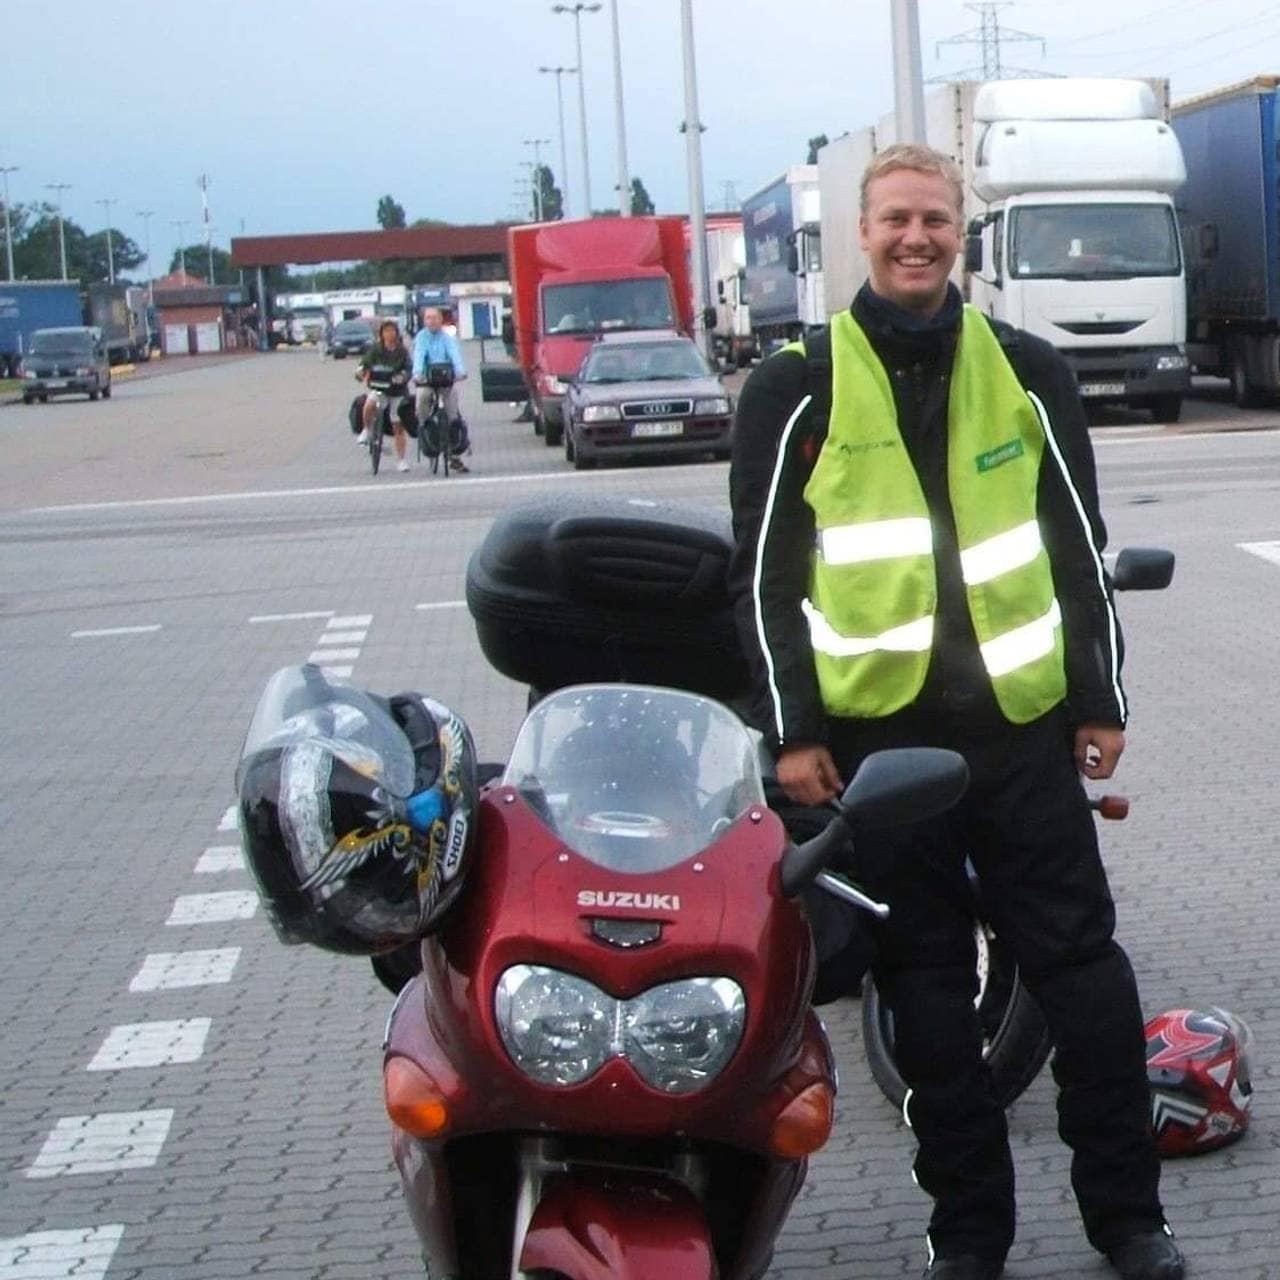 Ole Johnny Broholt Bakke har på seg refleksvest og poserer ved siden av en rød motorsykkel